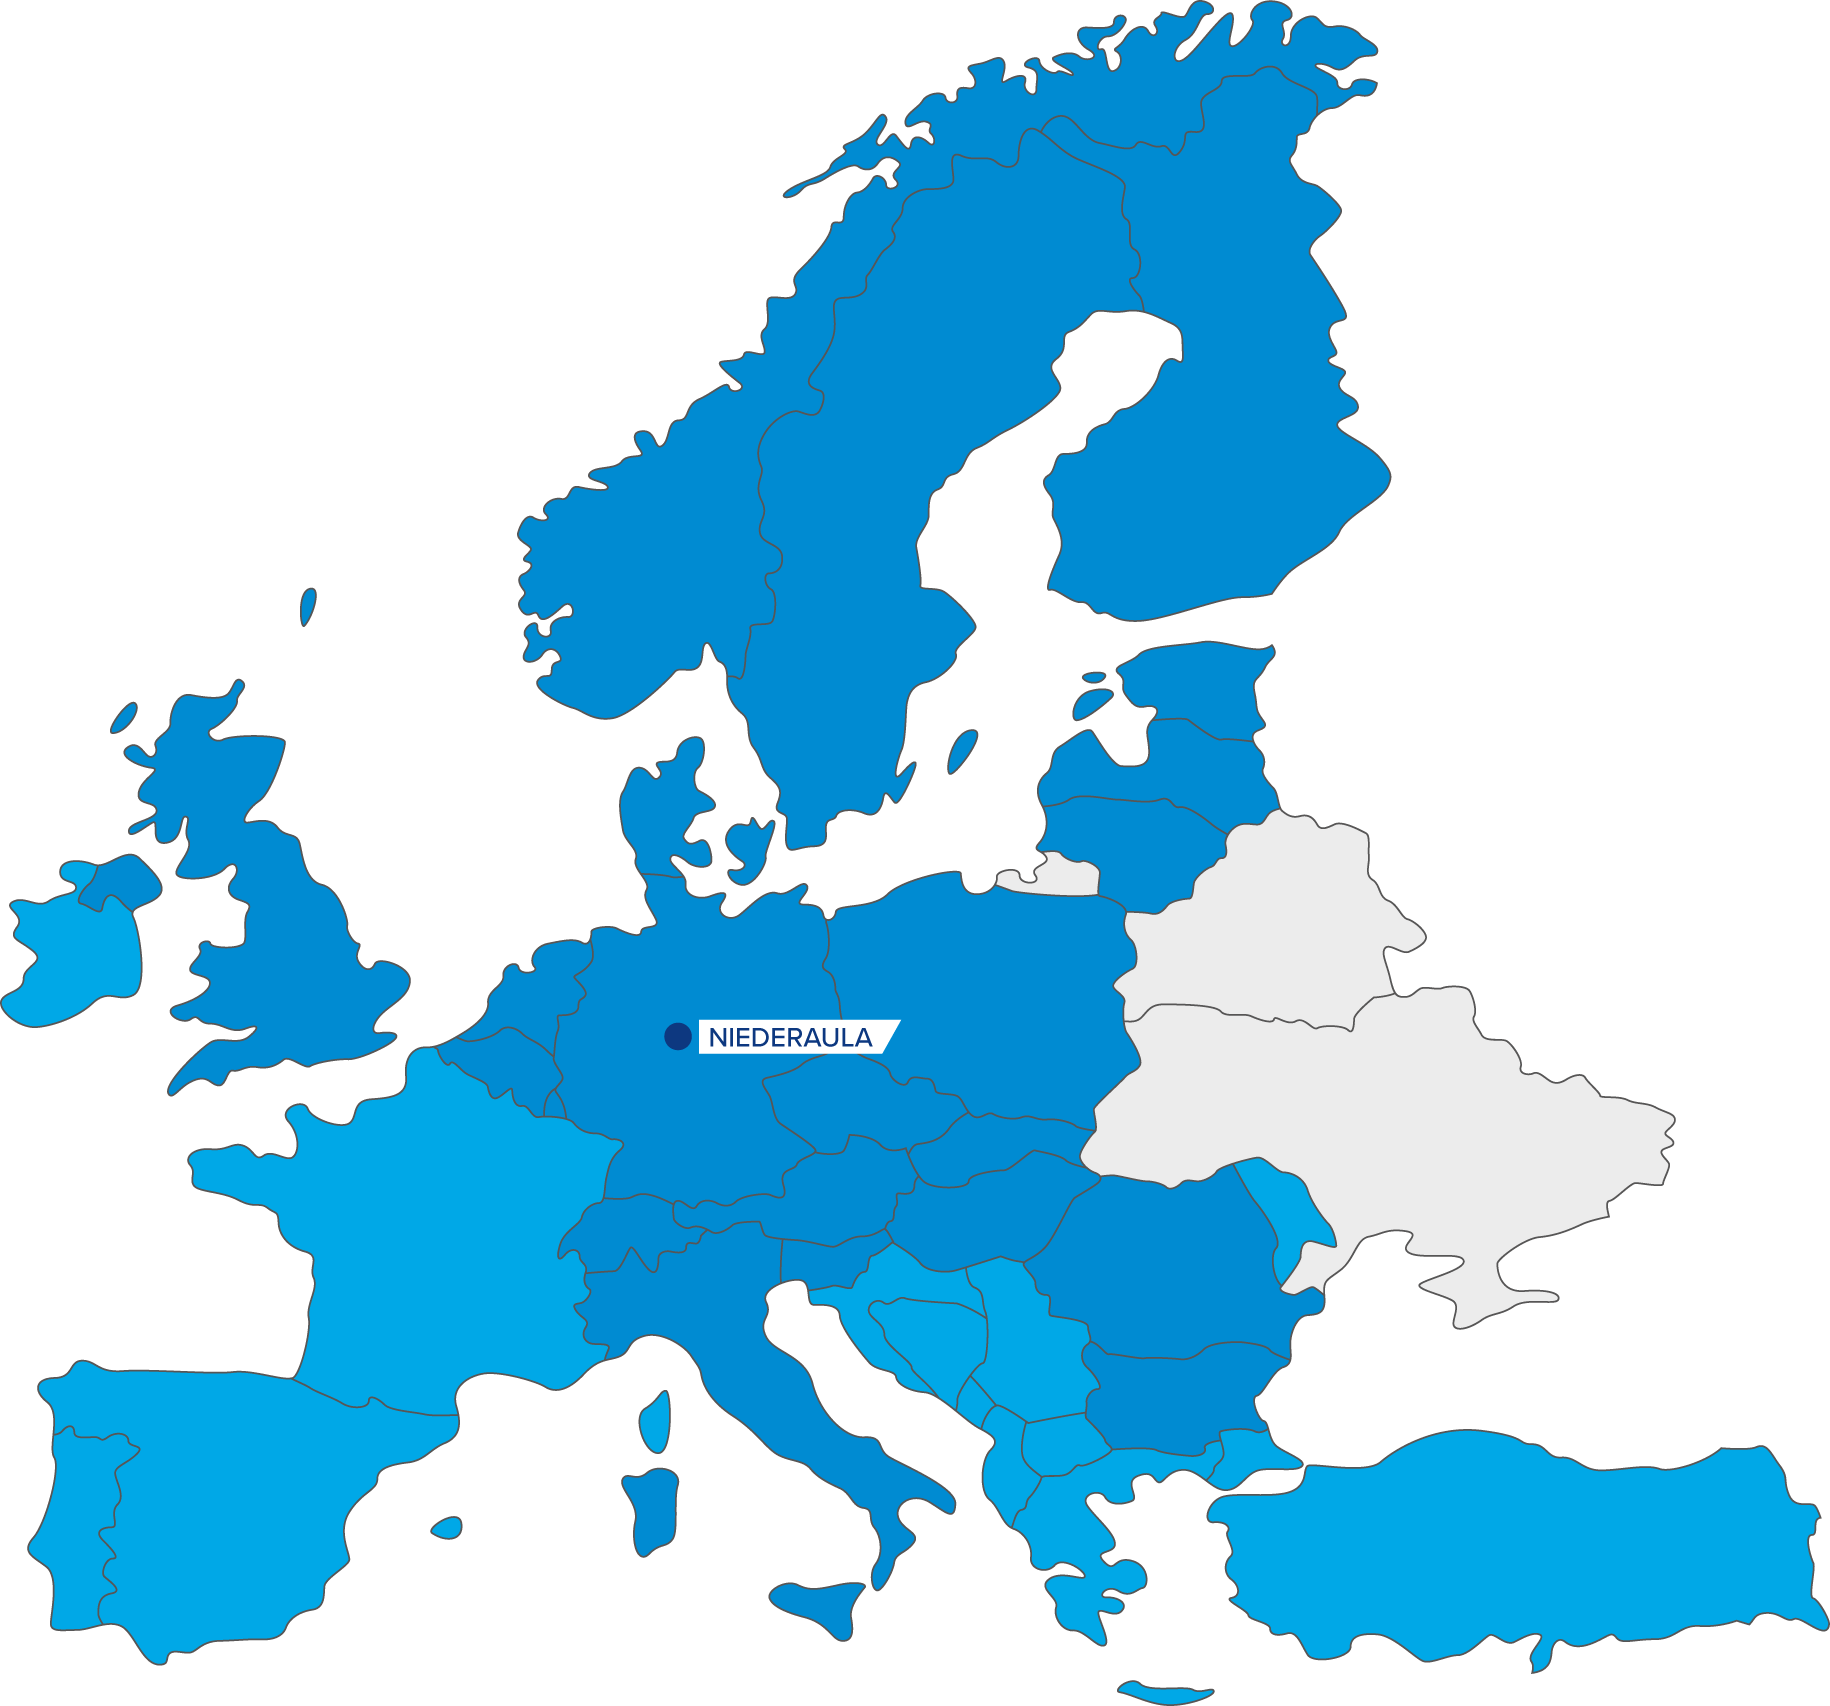 Mapa_Europa_NIEDERAULA.png